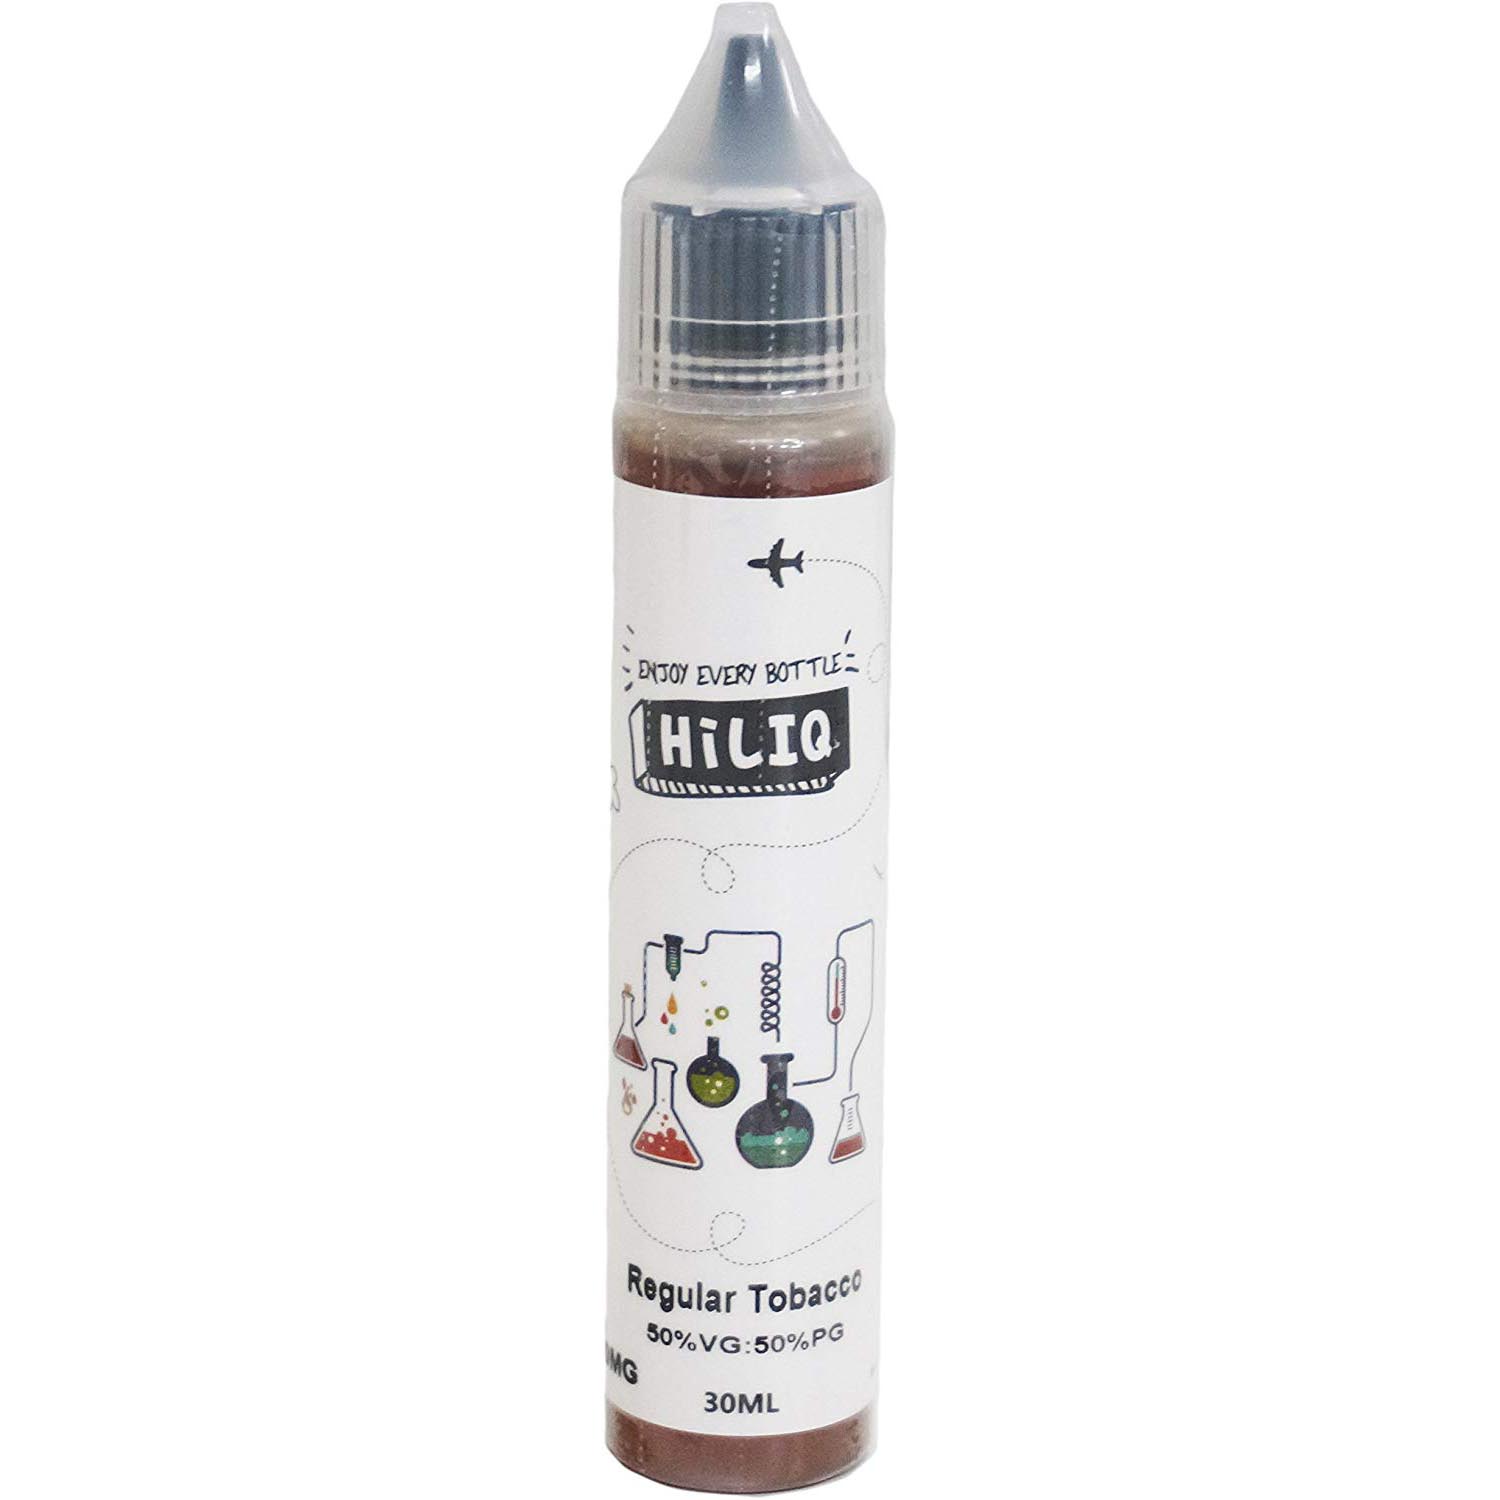 電子タバコ HiLIQ リキッド ハイリク タバコ系 30ml VAPE | レギュラータバコ